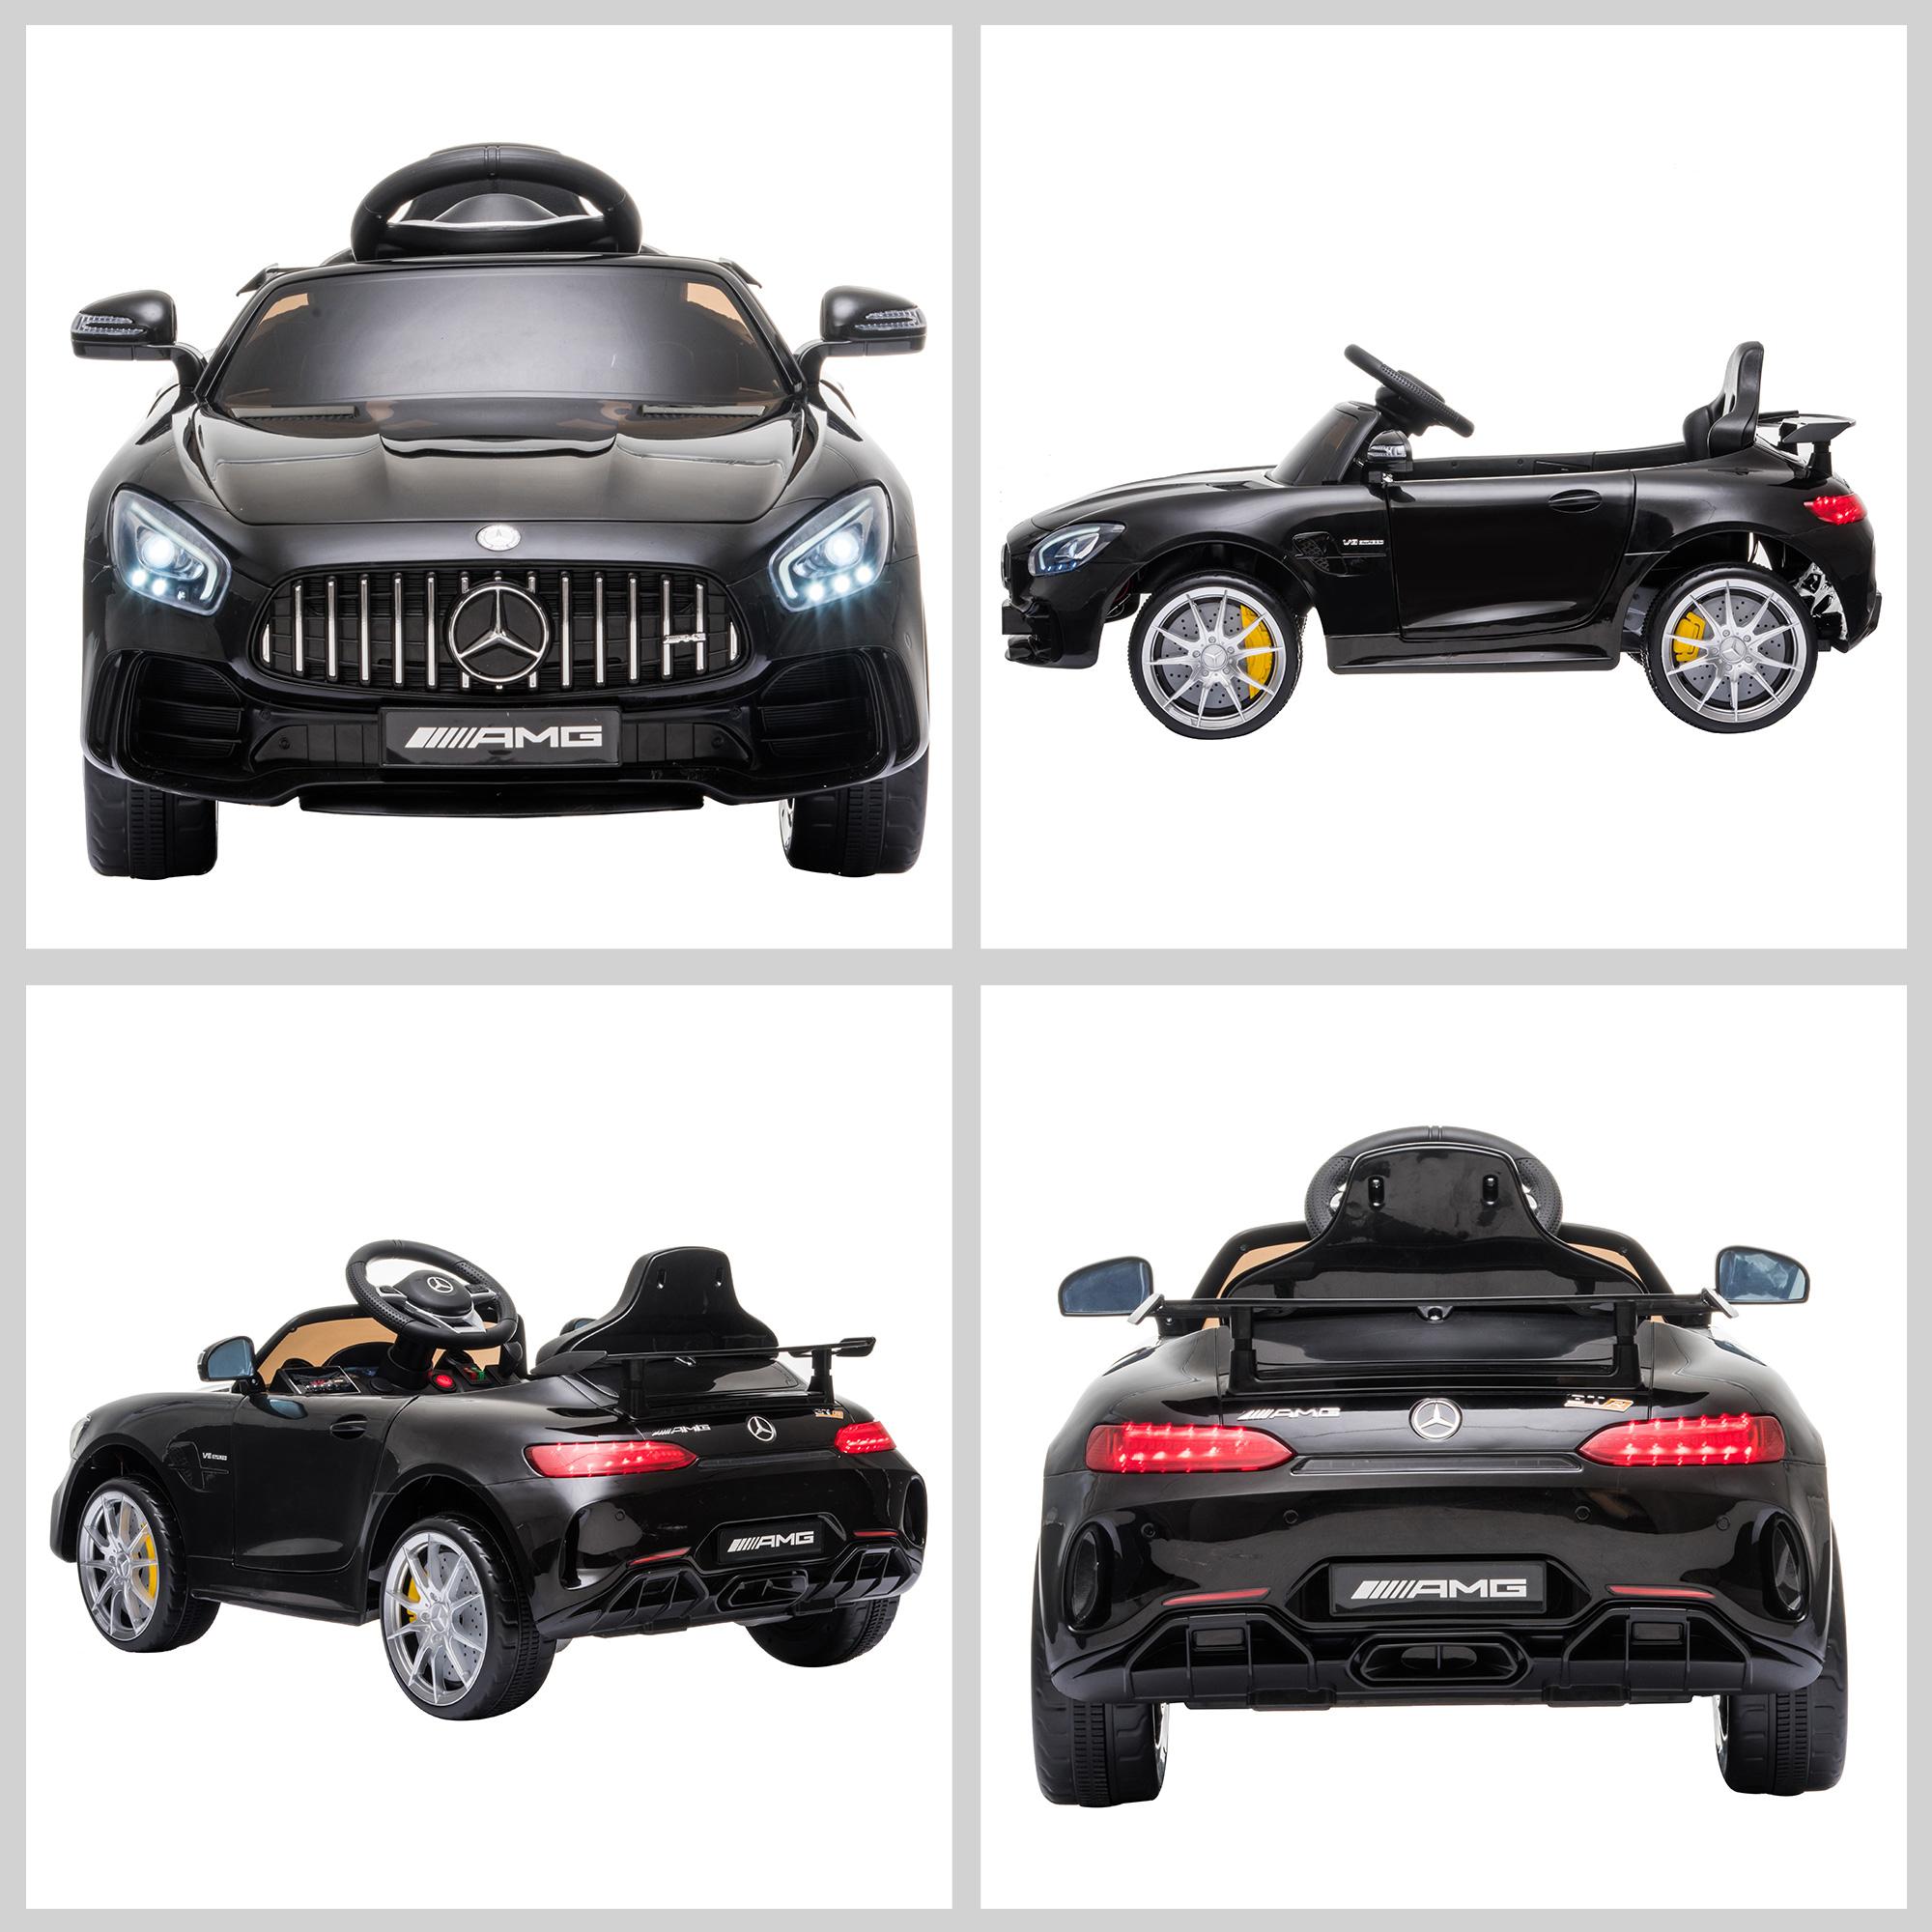 Voiture véhicule électrique enfants 12 V - V. max. 5 Km/h effets sonores, lumineux, télécommande Mercedes-AMG GT R noir